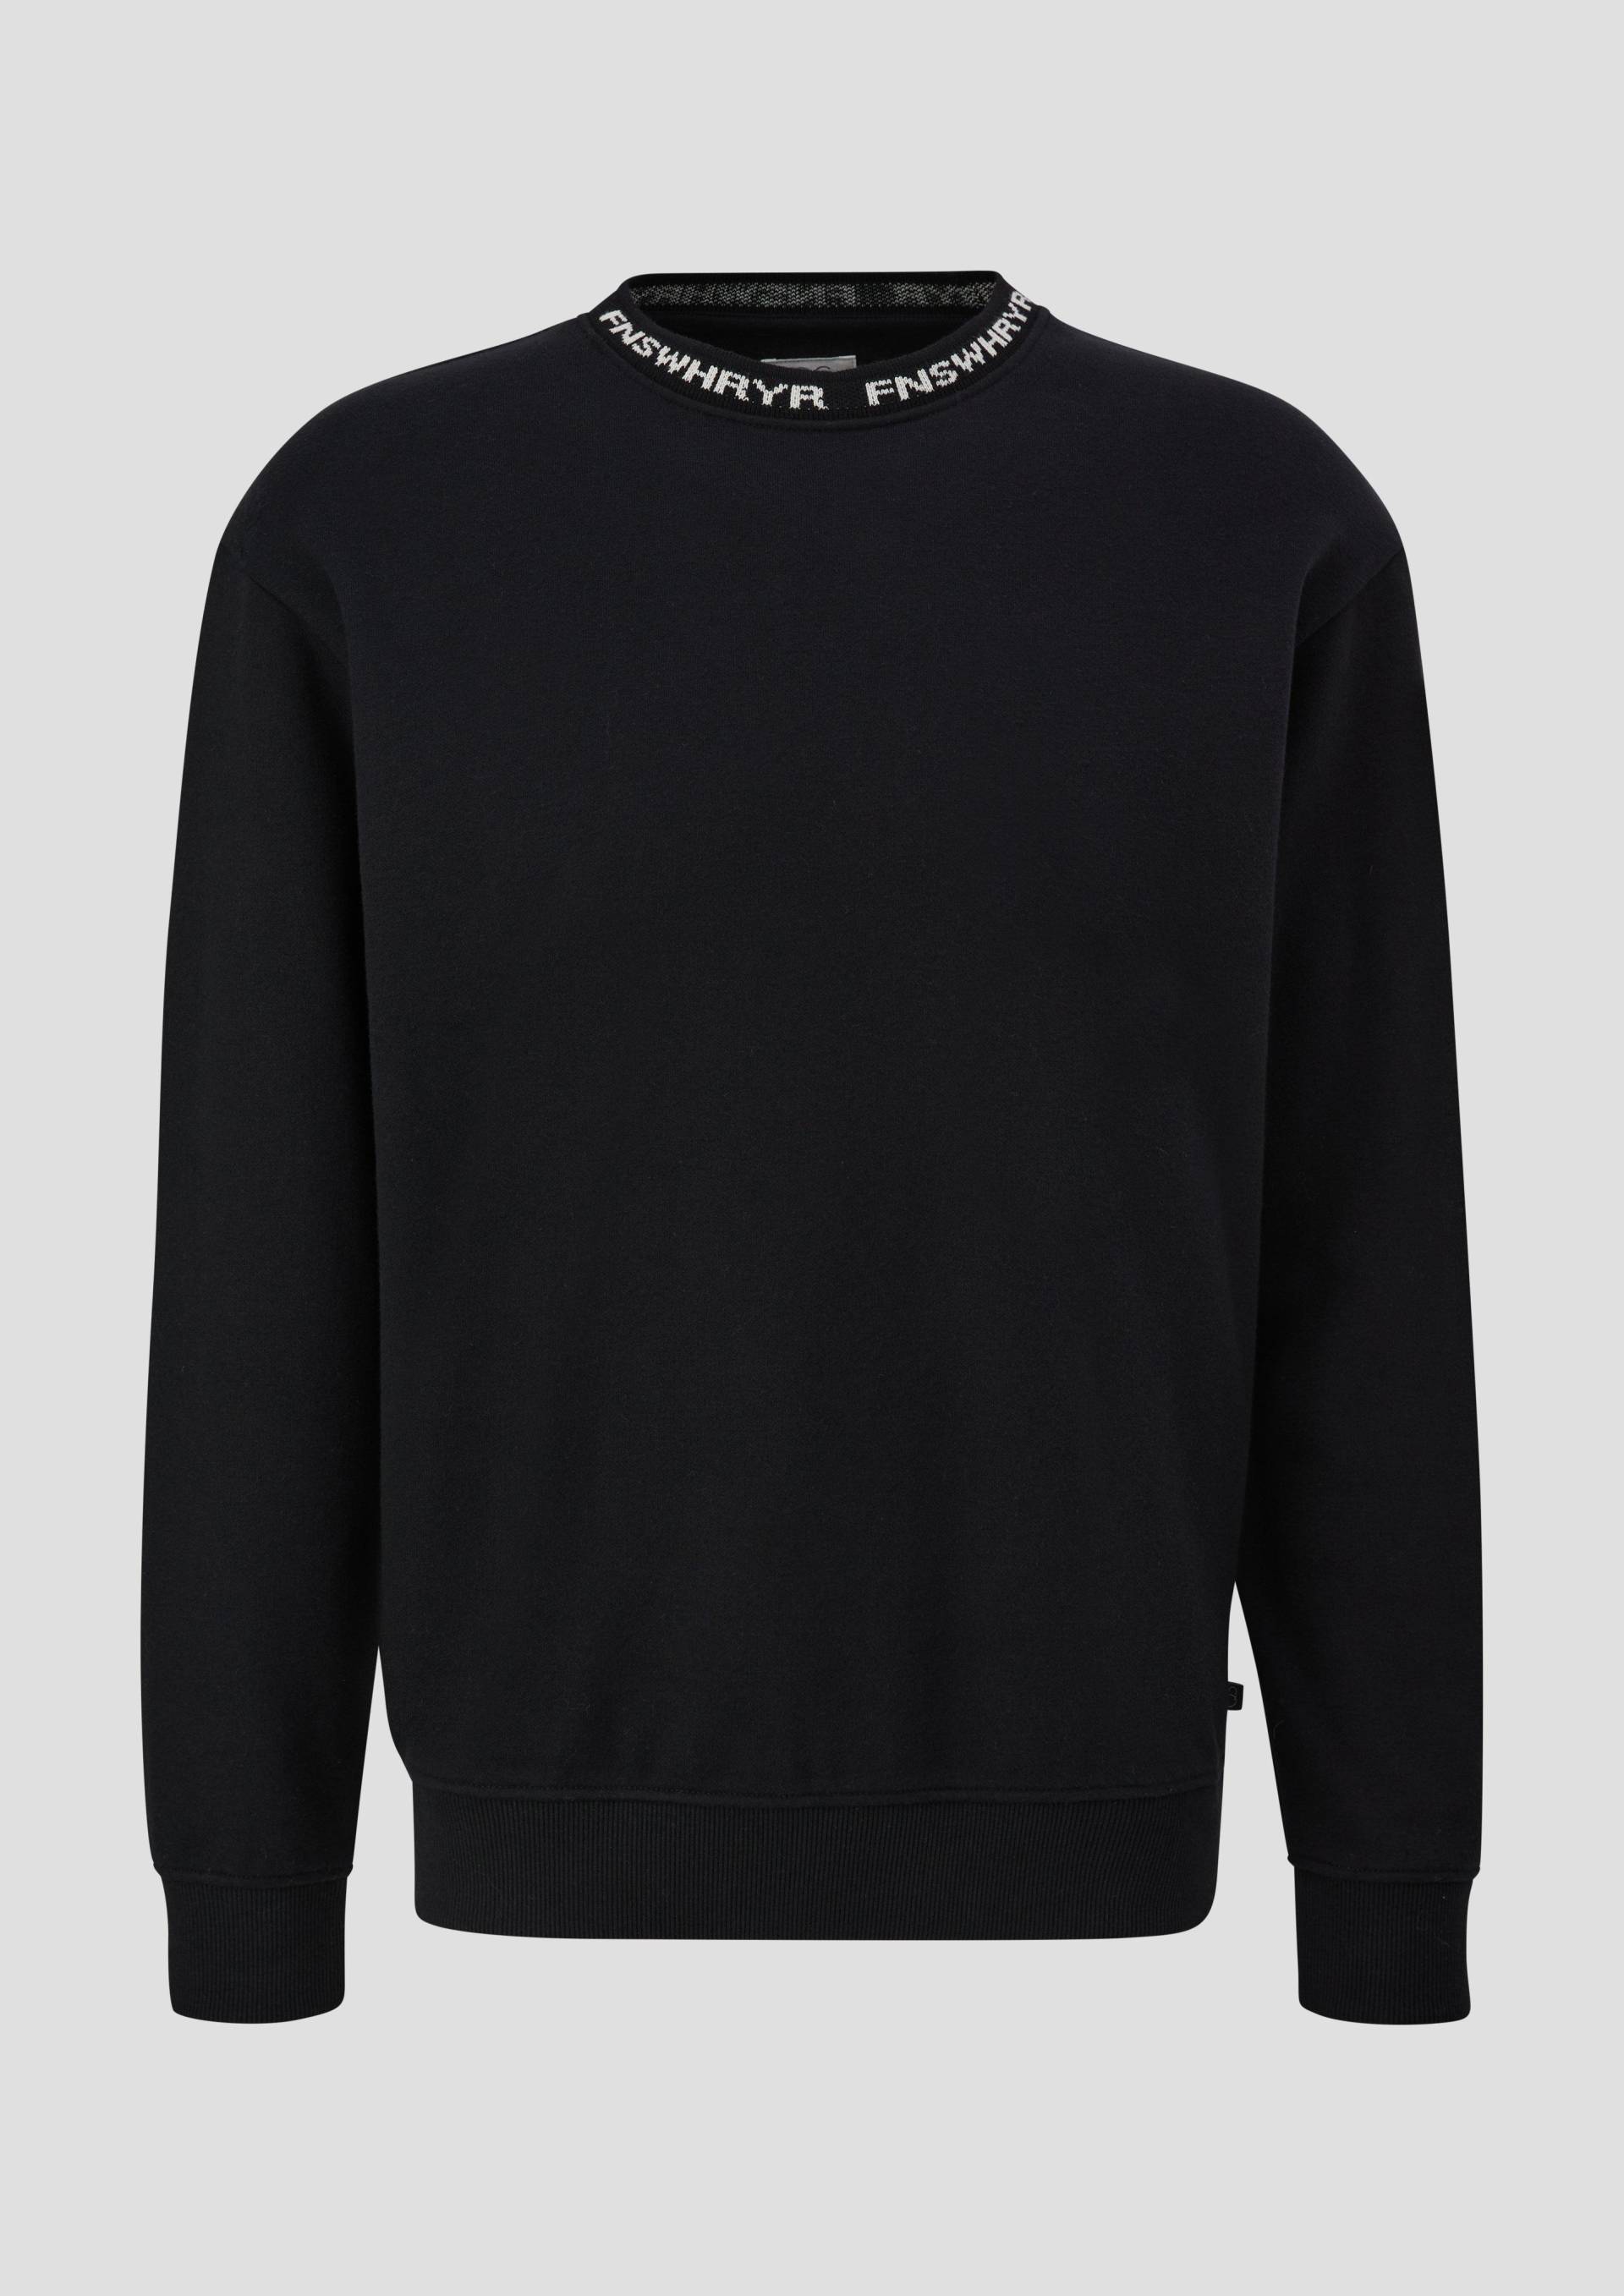 QS - Sweatshirt mit Jacquard-Blende, Herren, schwarz von QS